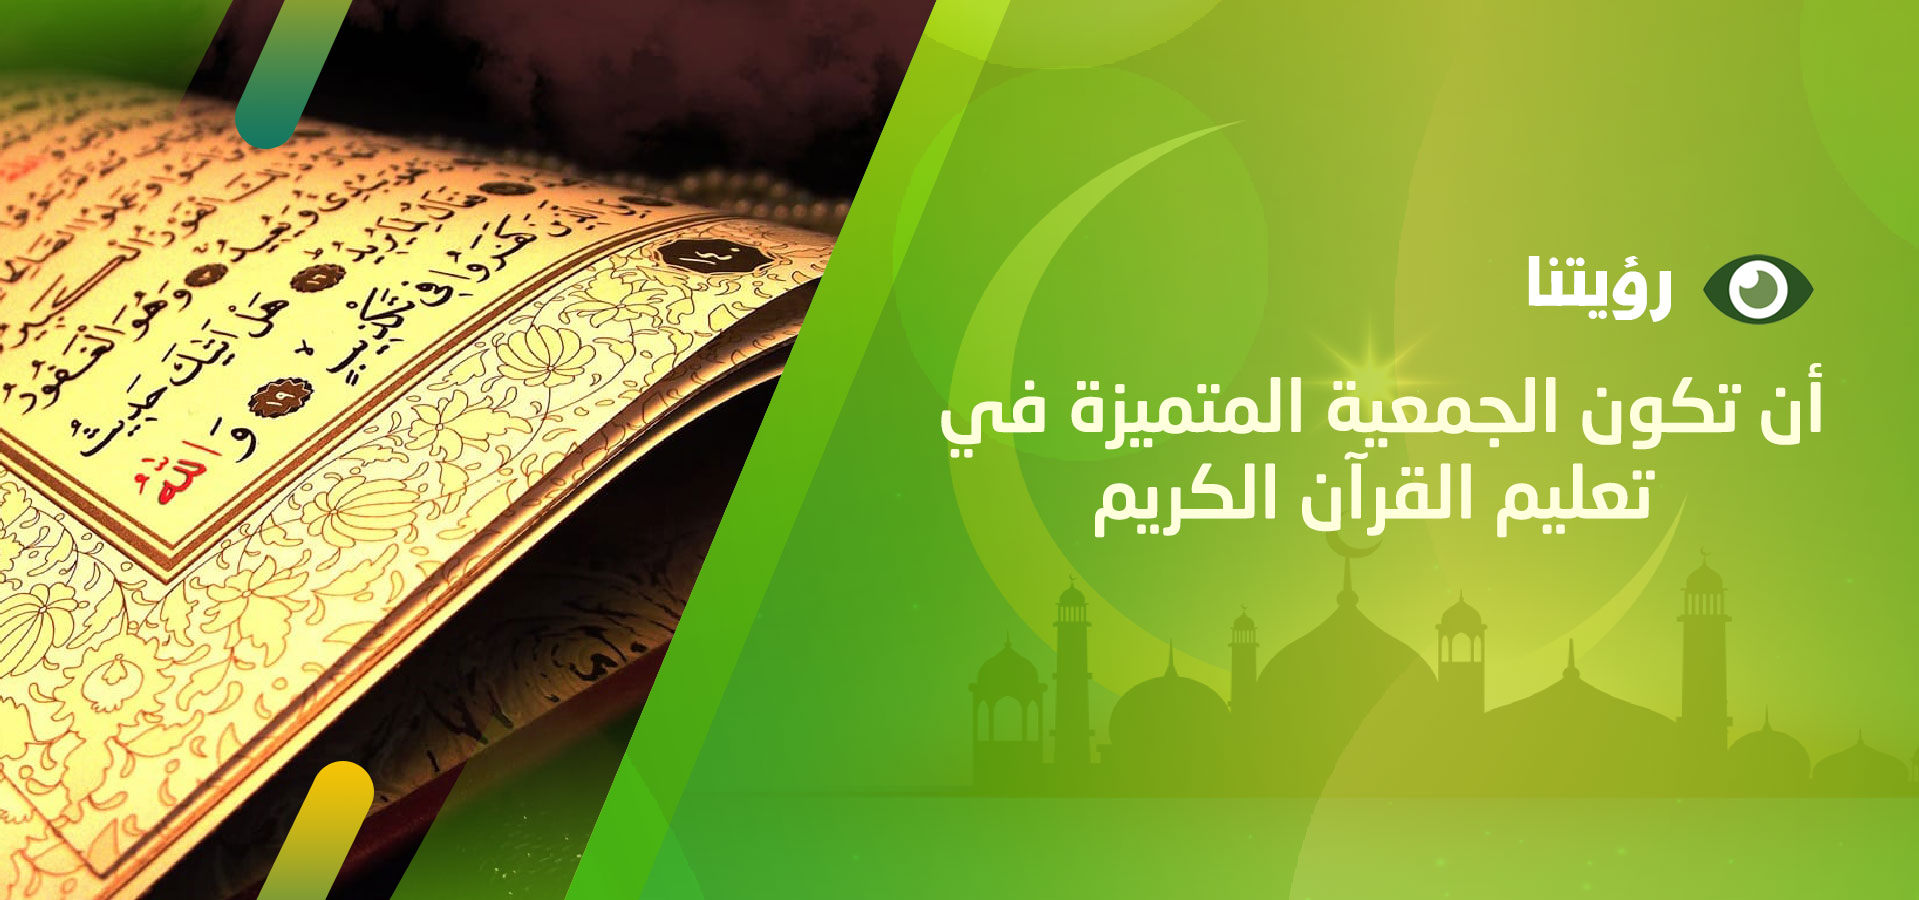 الجمعية الخيرية لتحفيظ القرآن الكريم بروضة سدير